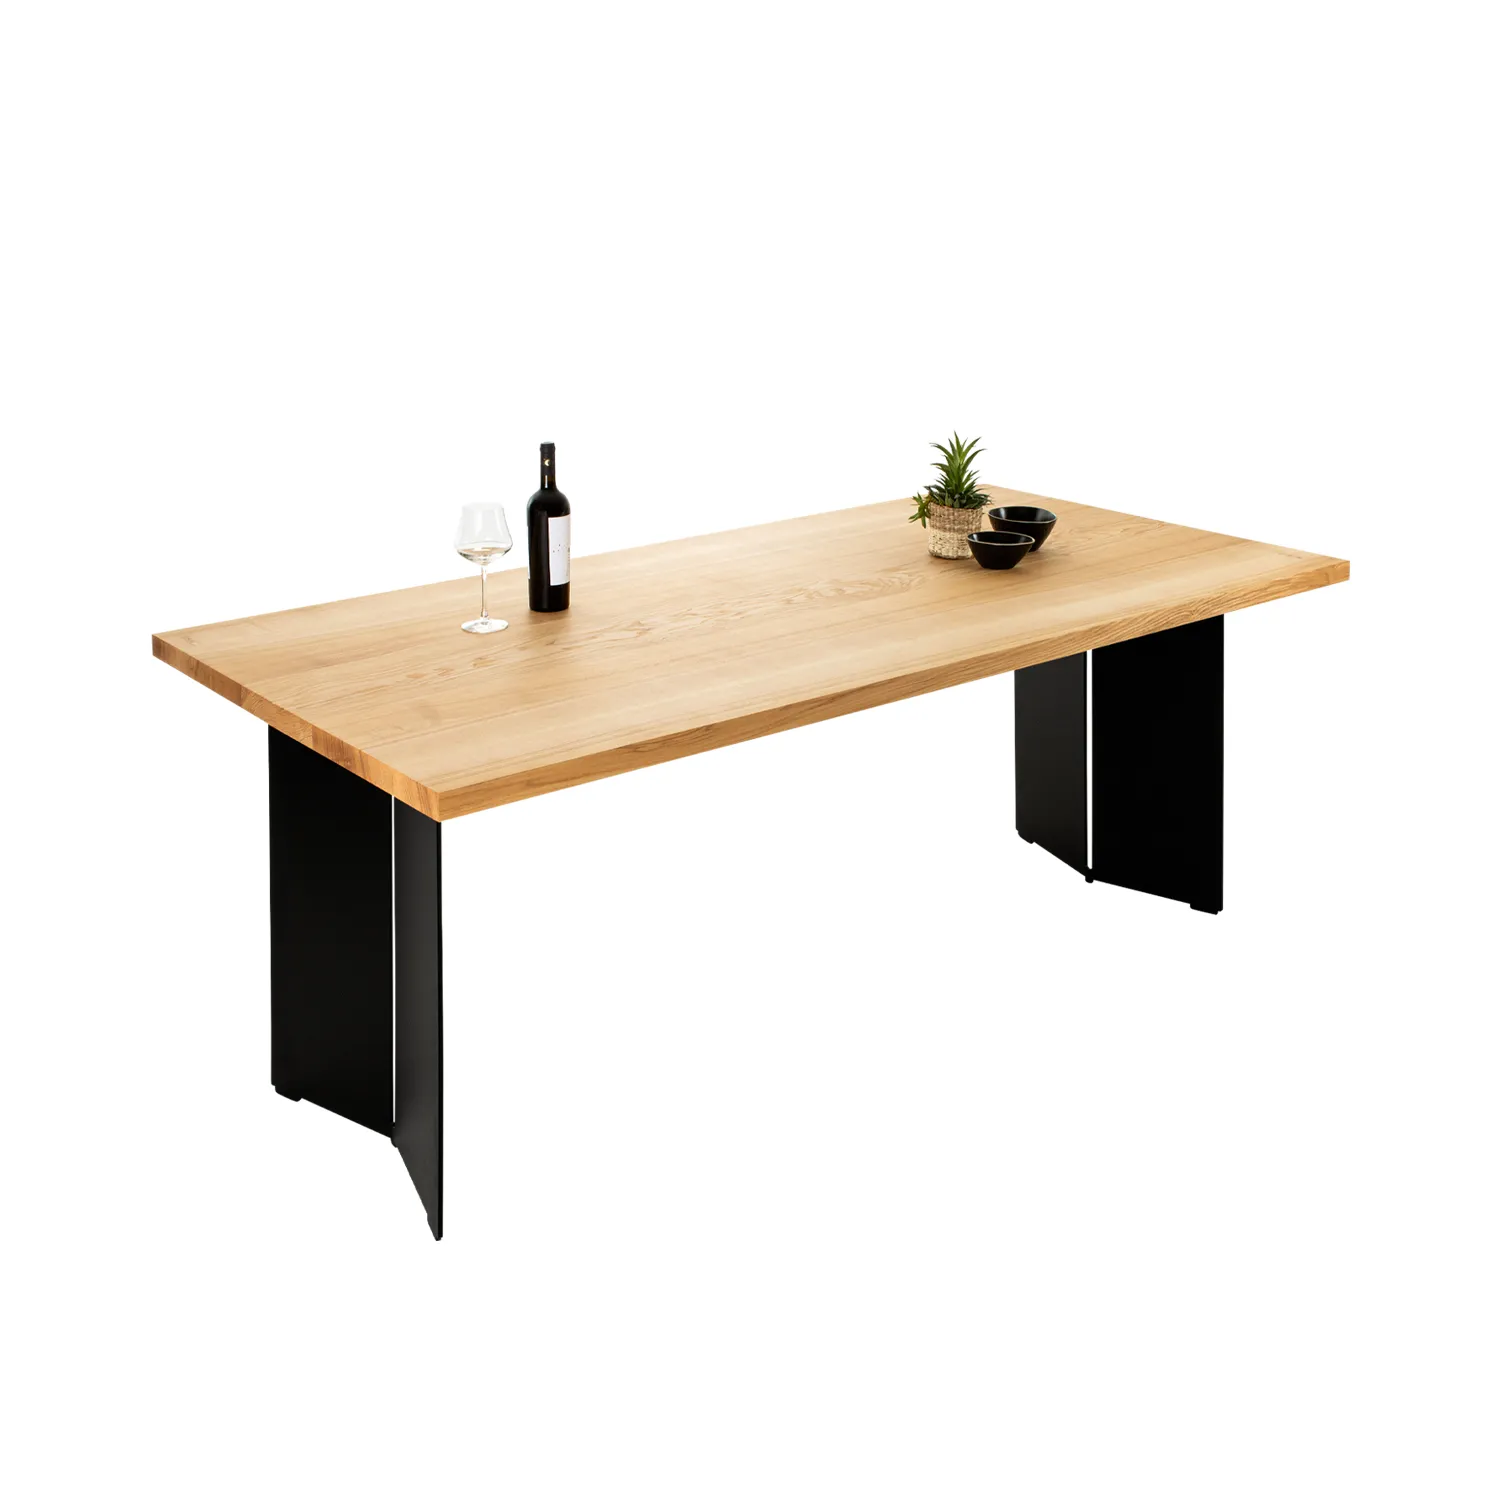 Tisch aus Esche massiv auf Tischgestell aus Stahlwangen